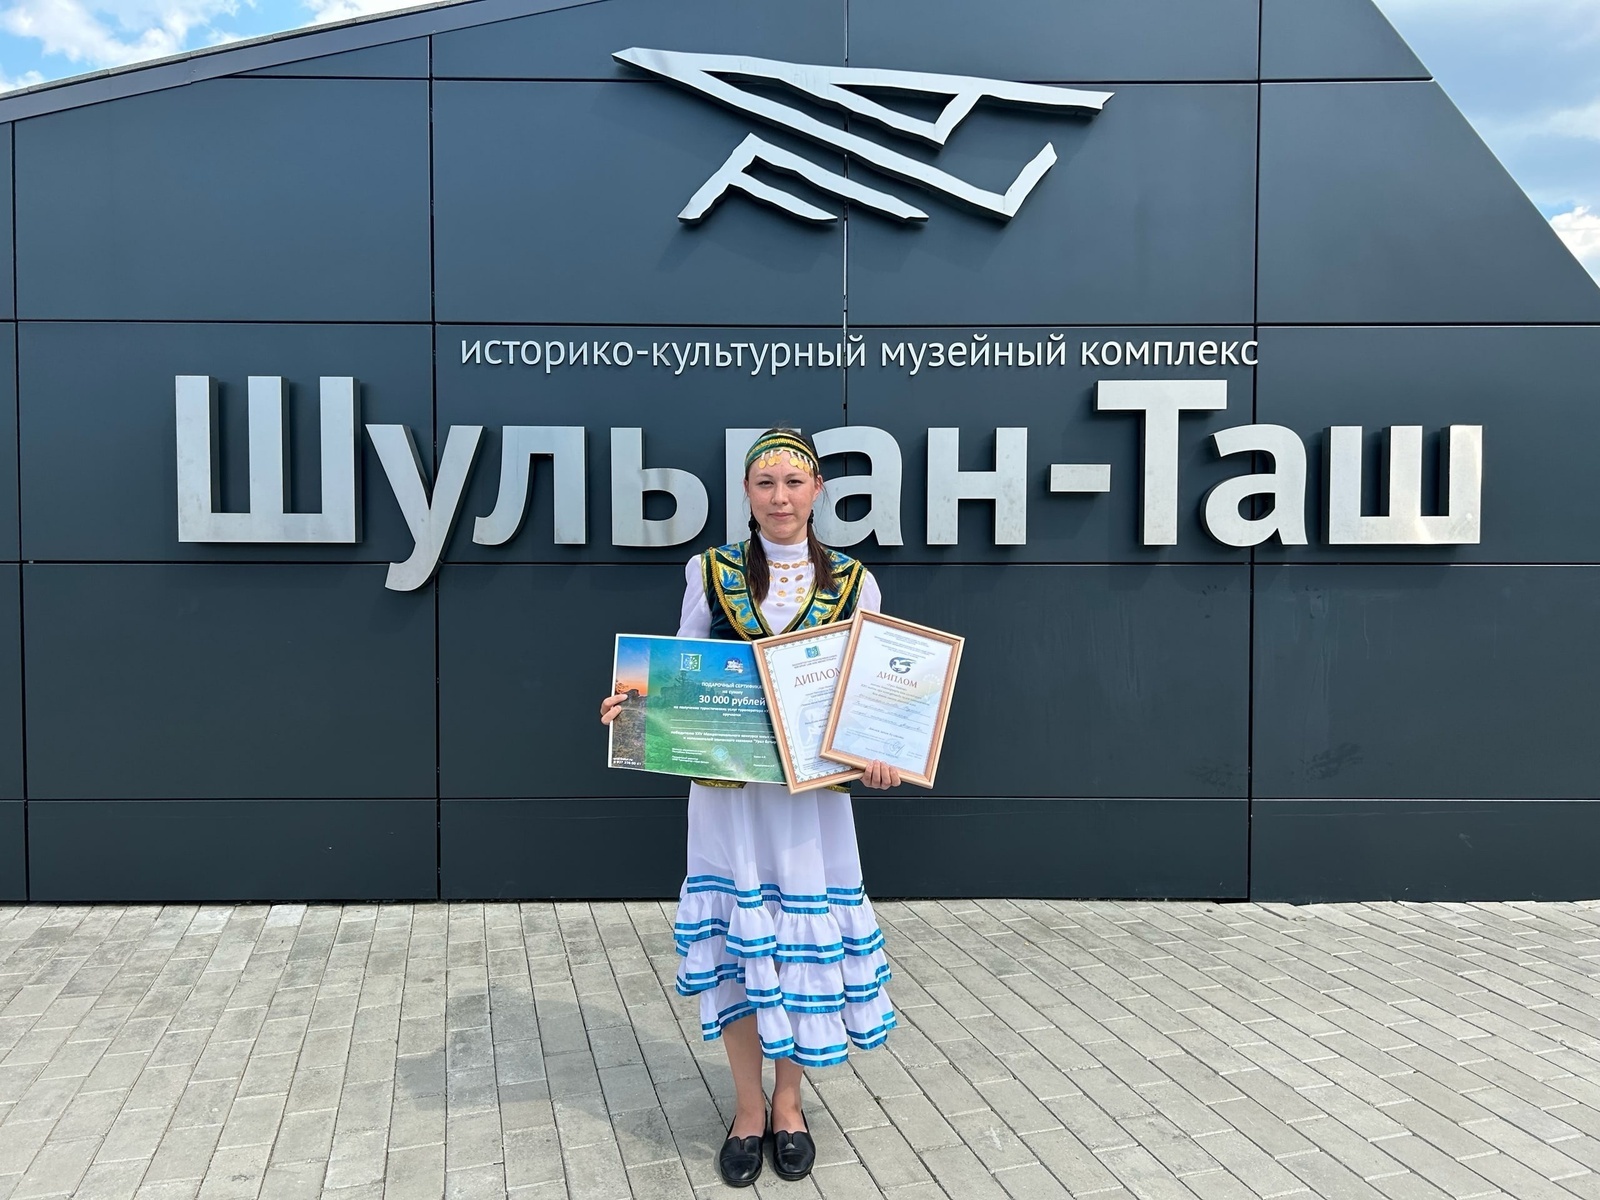 В Башкирии назвали победителей межрегионального конкурса юных сказителей конкурса "Урал батыр"